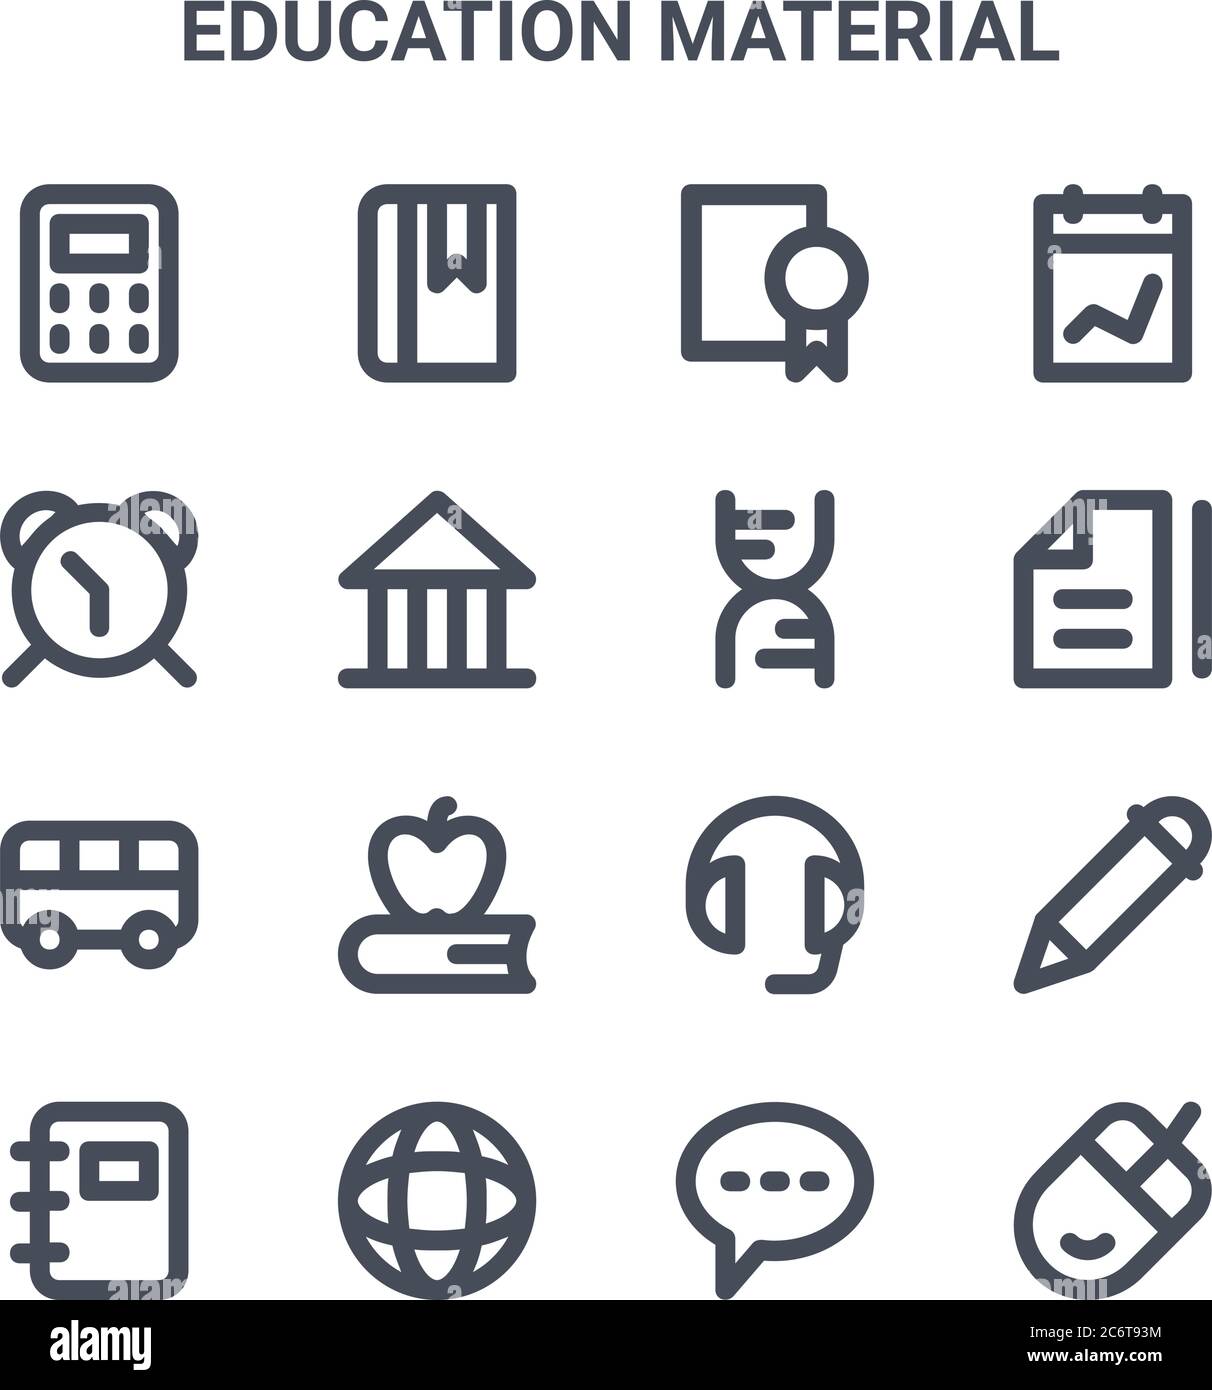 ensemble de 16 icônes de lignes vectorielles de concept de matériel éducatif. icônes 64x64 à traits fins telles que signet, réveil, fichier, casque, globe, souris, bouton de chat Illustration de Vecteur